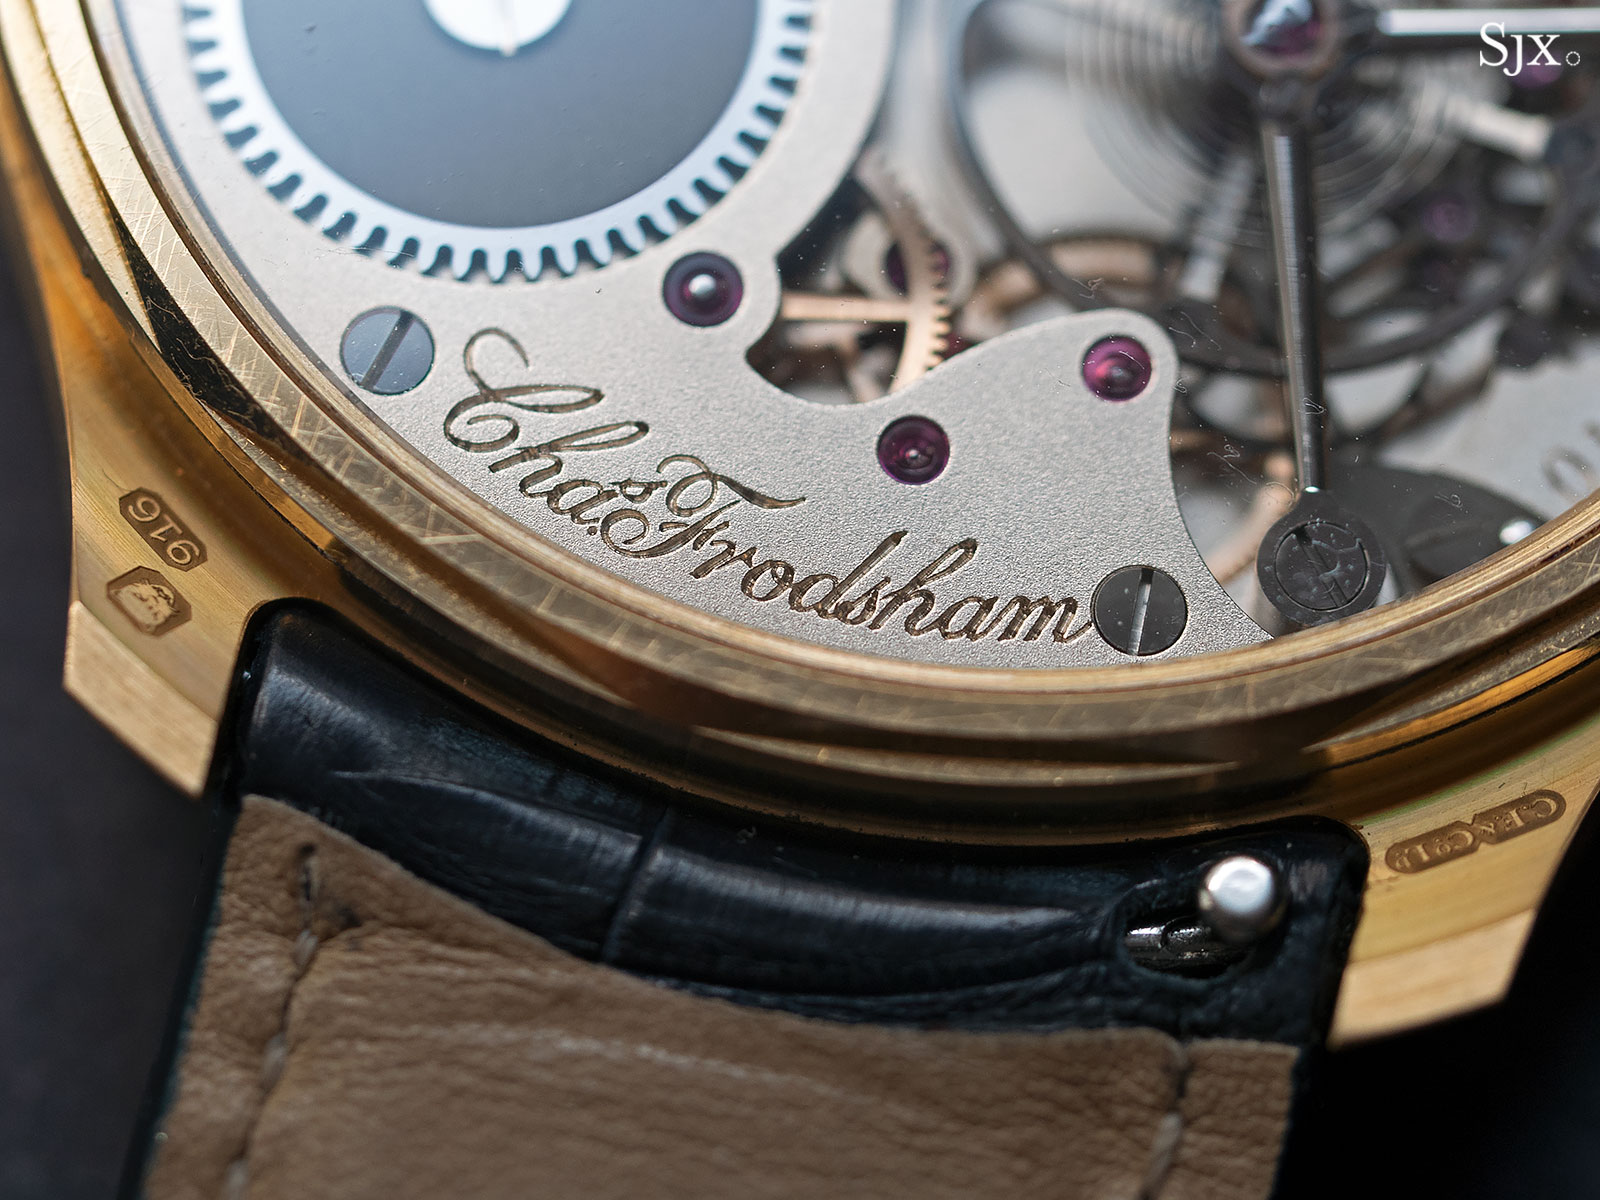 Frodsham Double Impulse Chronometer 22k gold 8